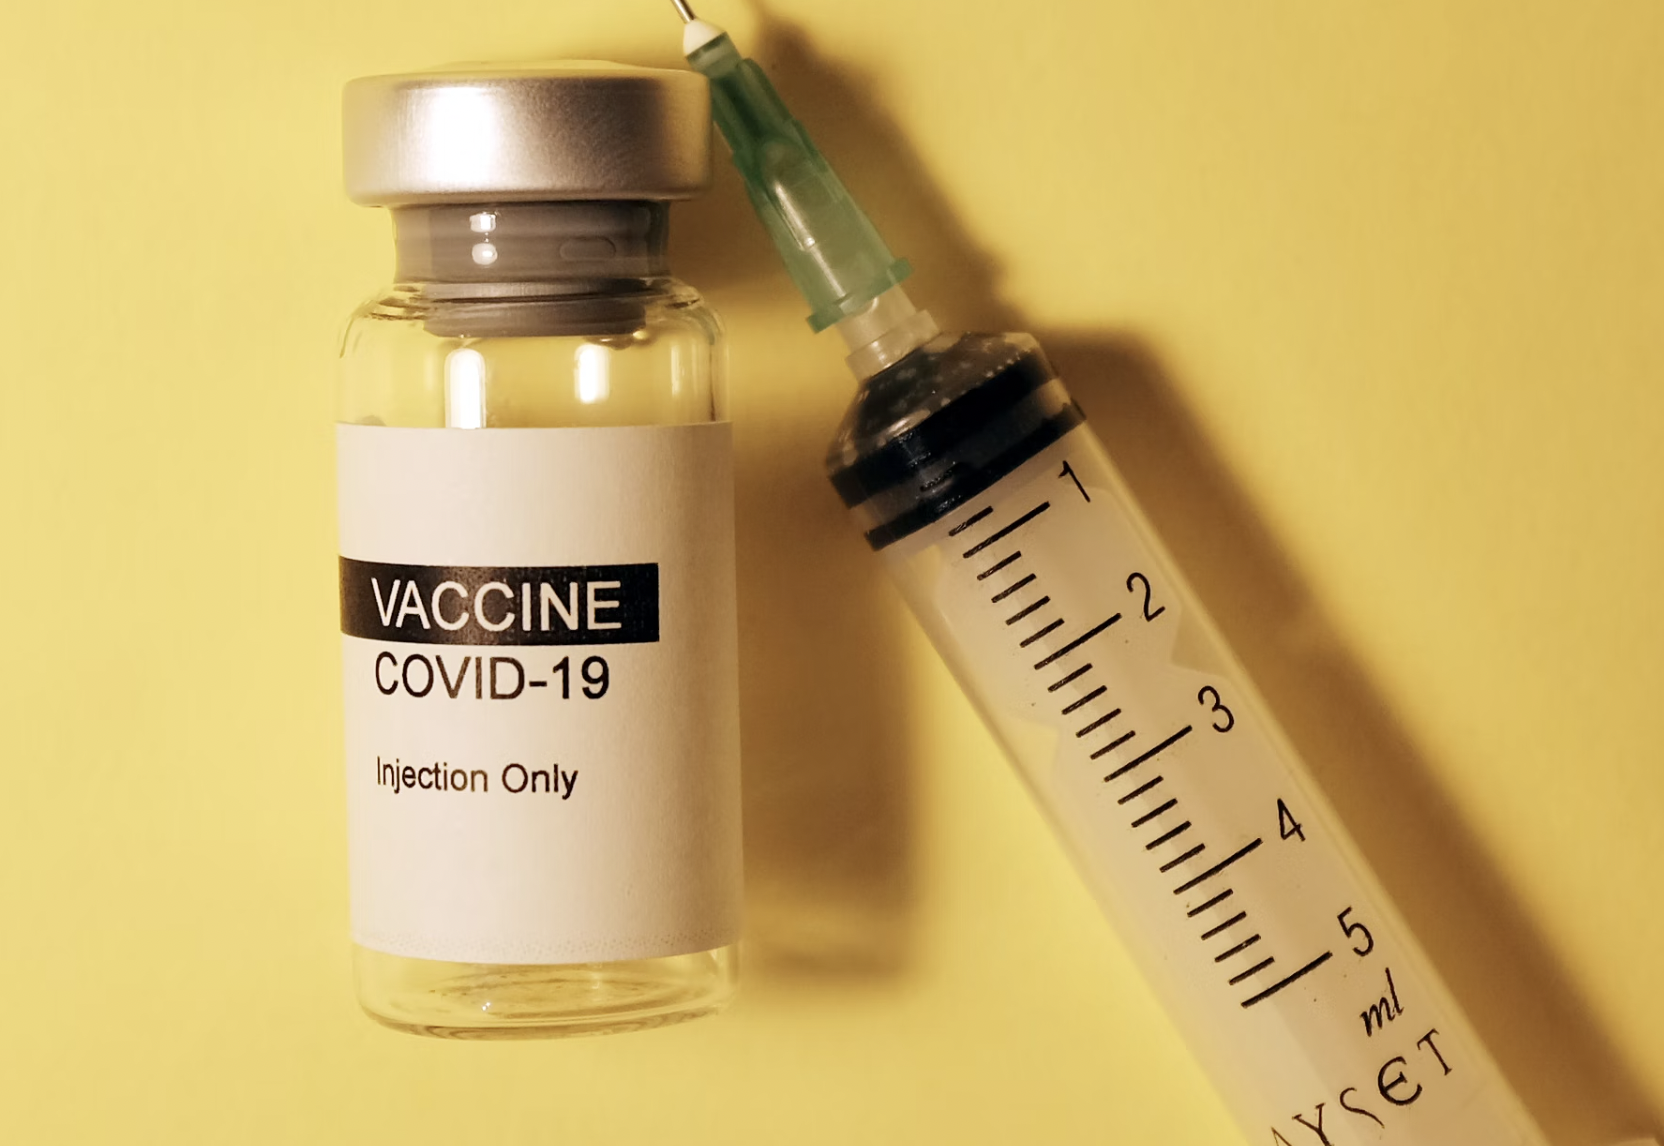 У кого выше риск получить инфаркт после COVID: вакцинированных или со своим иммунитетом